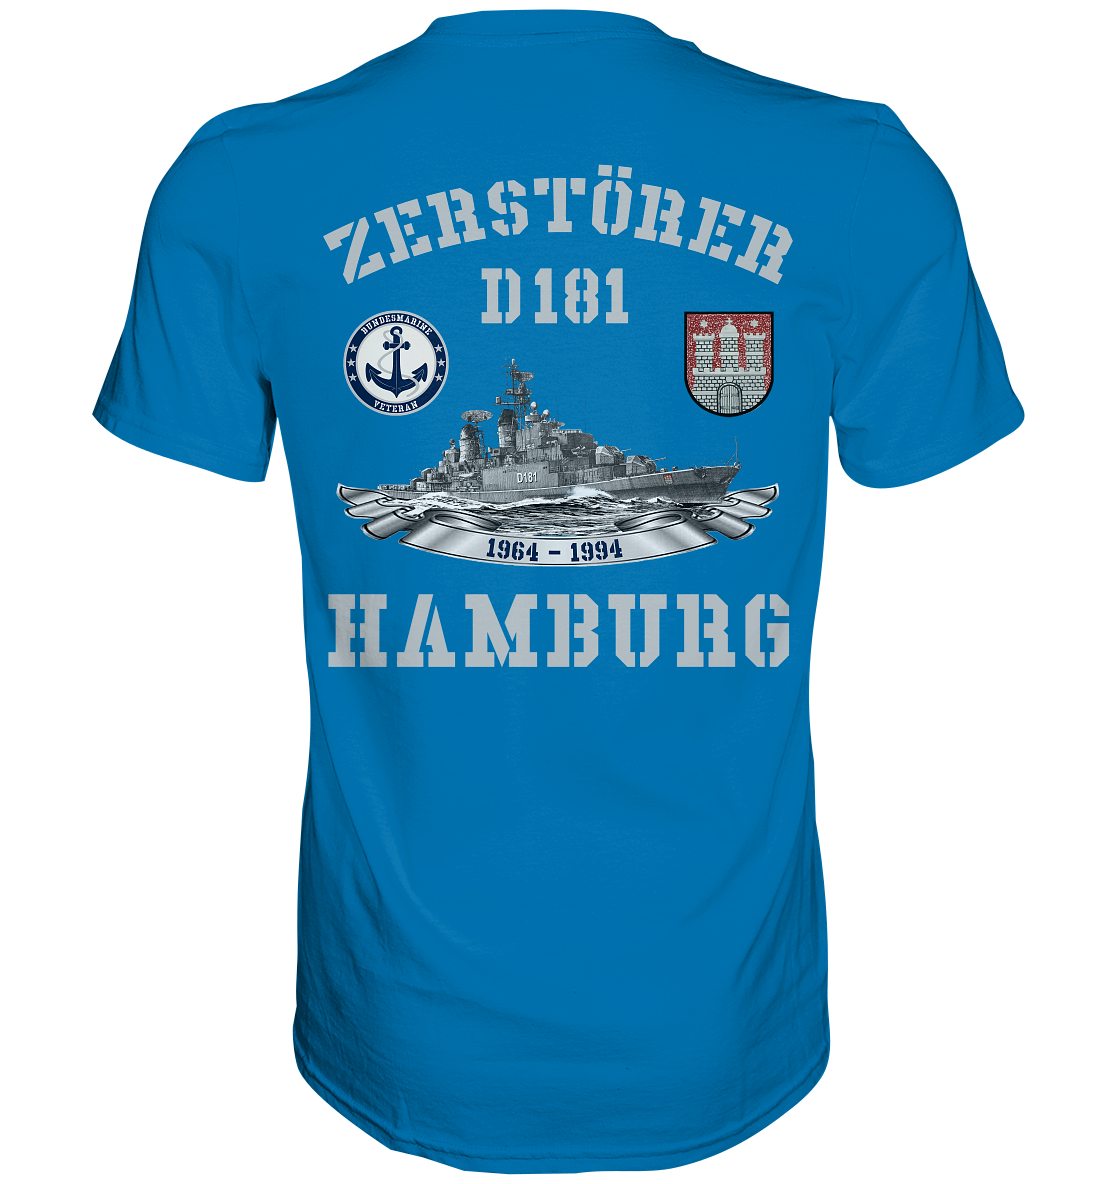 2. ZG Zerstörer D181 HAMBURG; beidseitiger Druck - Premium Shirt